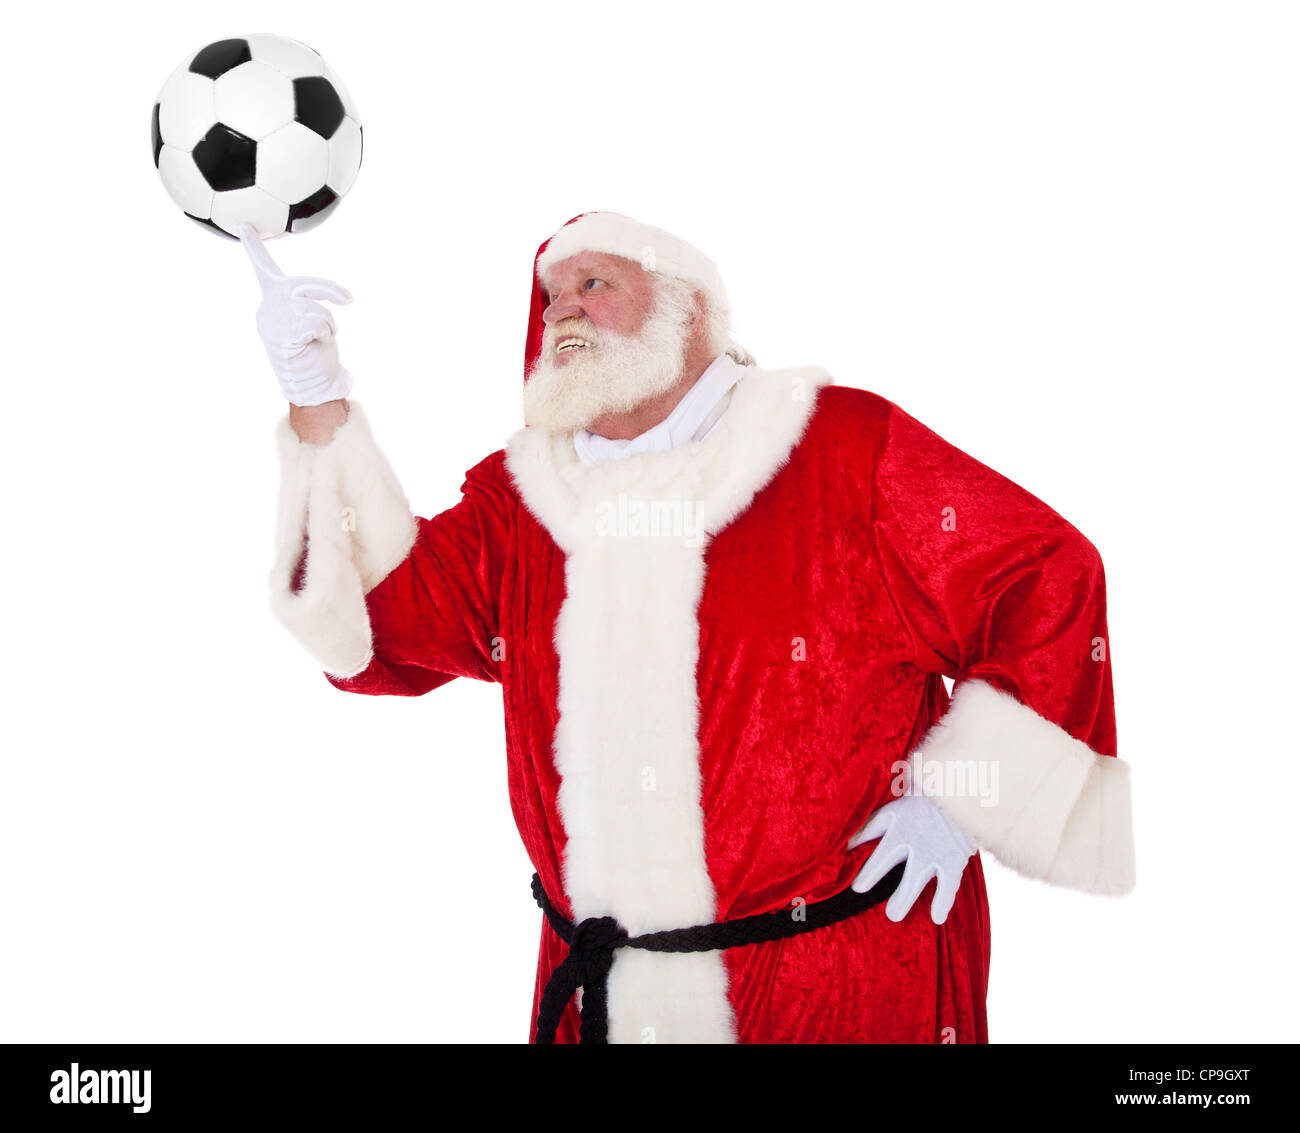 Père Noël en aspect authentique à jouer avec un ballon de football. Le tout sur fond blanc. Banque D'Images